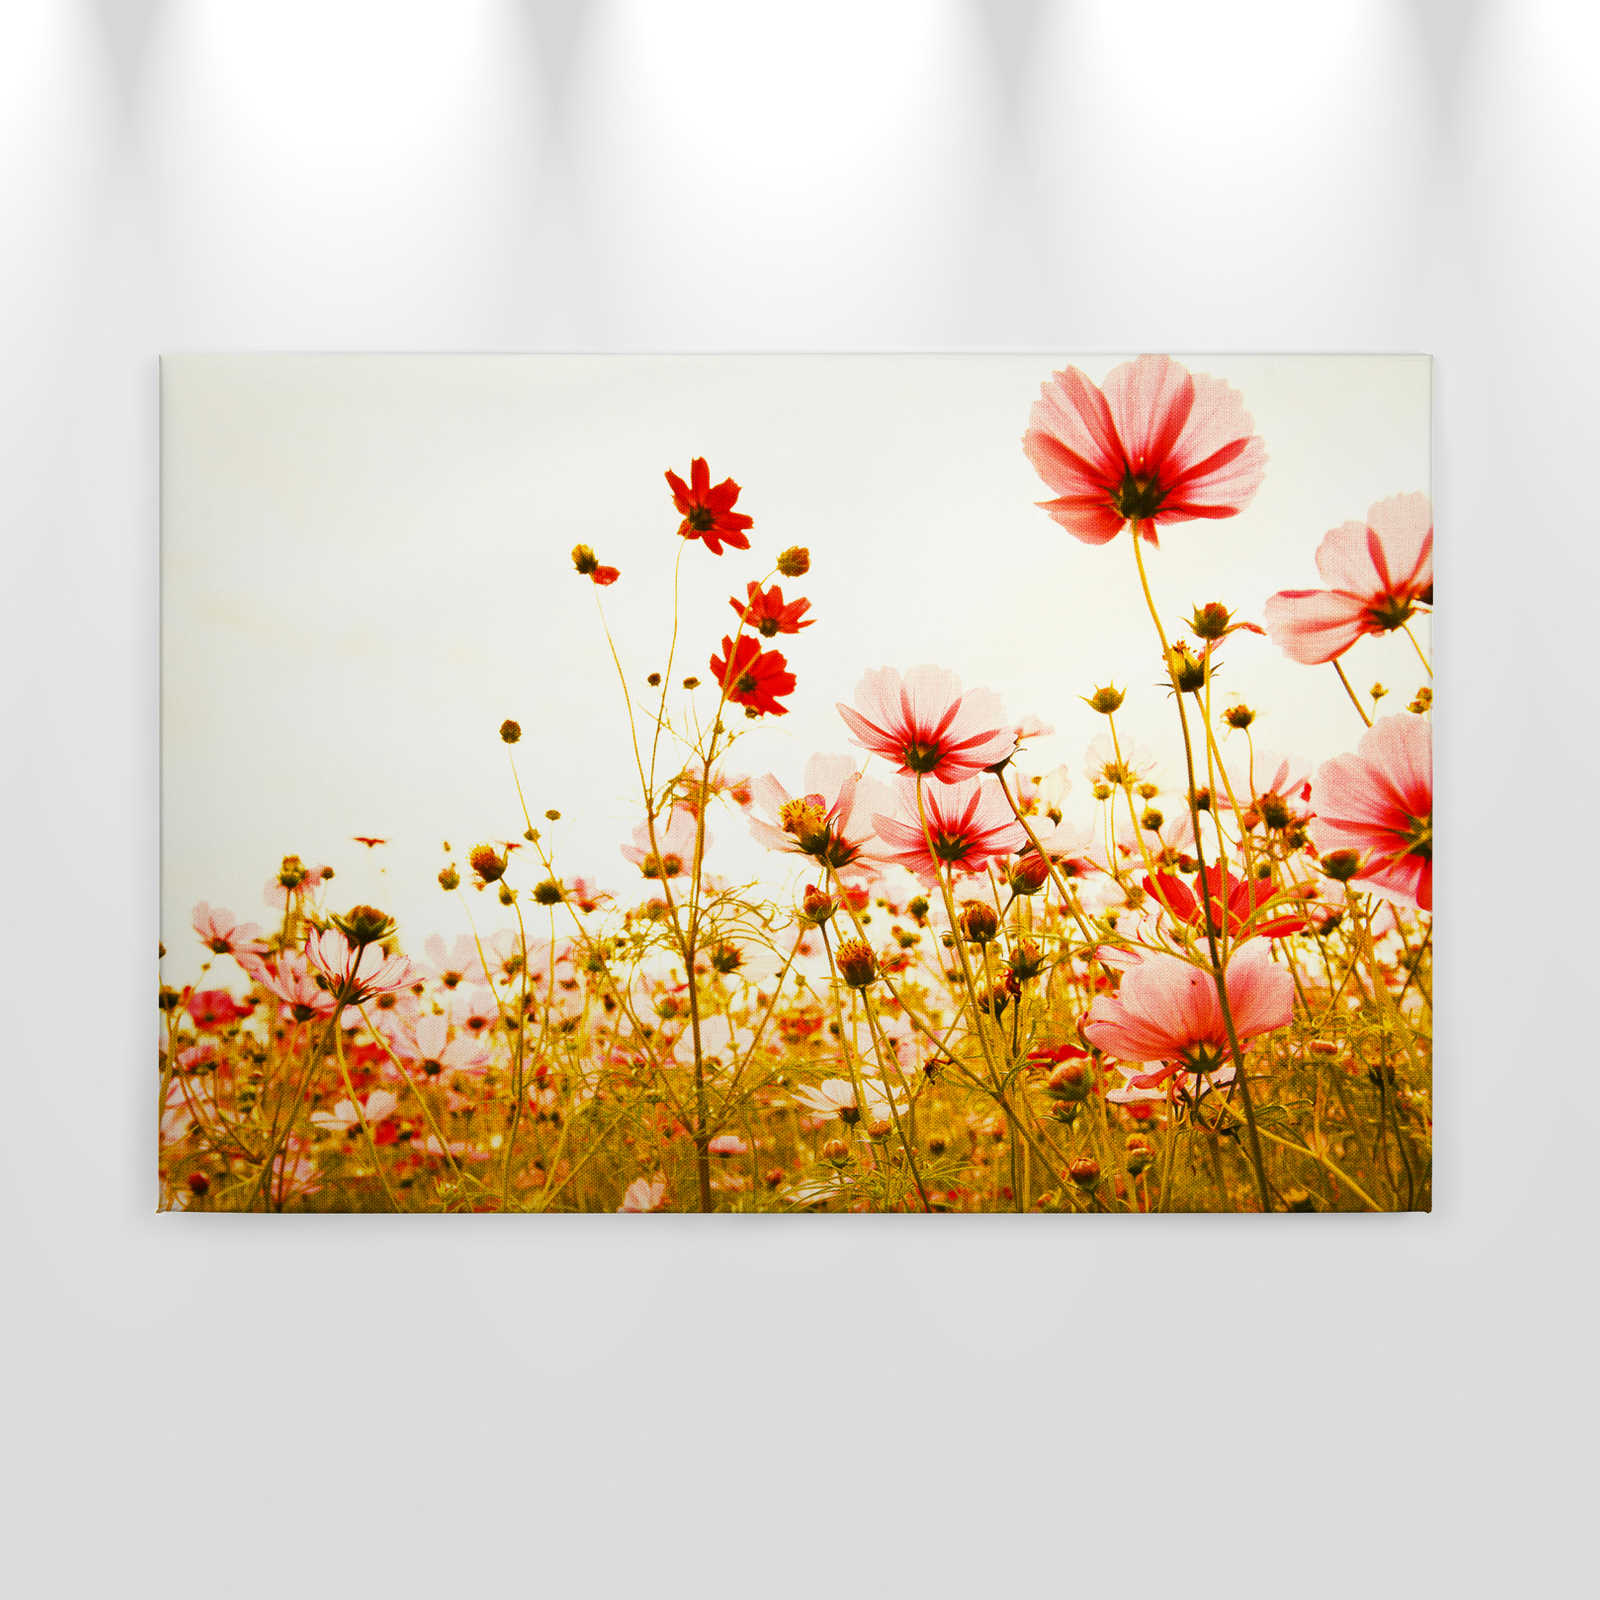             Canvas met bloemenweide in de lente | groen, roze, wit - 0.90 m x 0.60 m
        